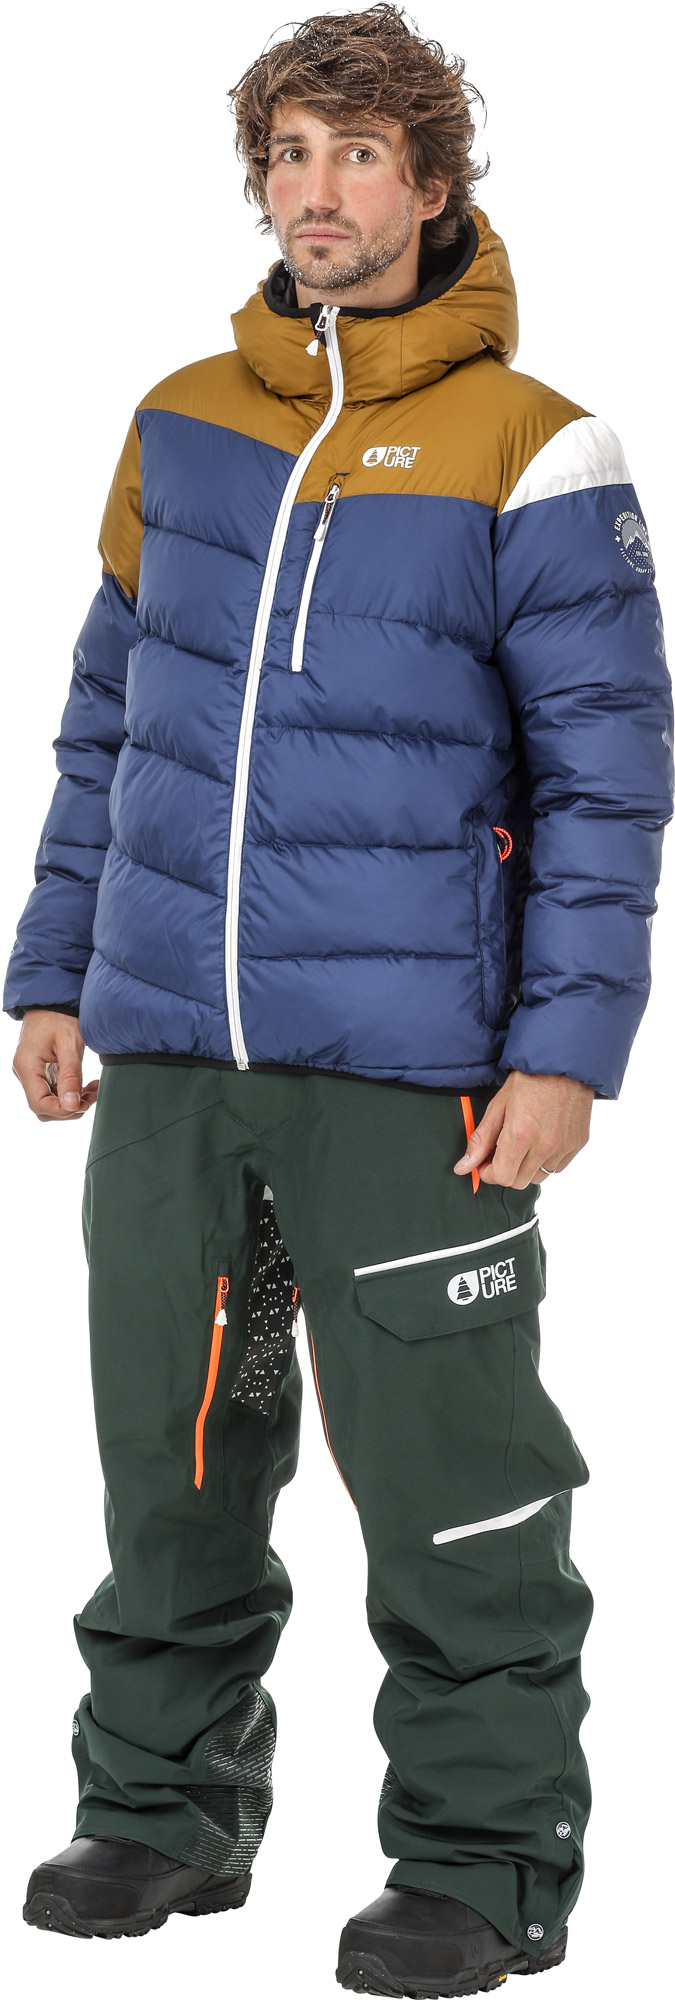 Men’s reversible winter jacket